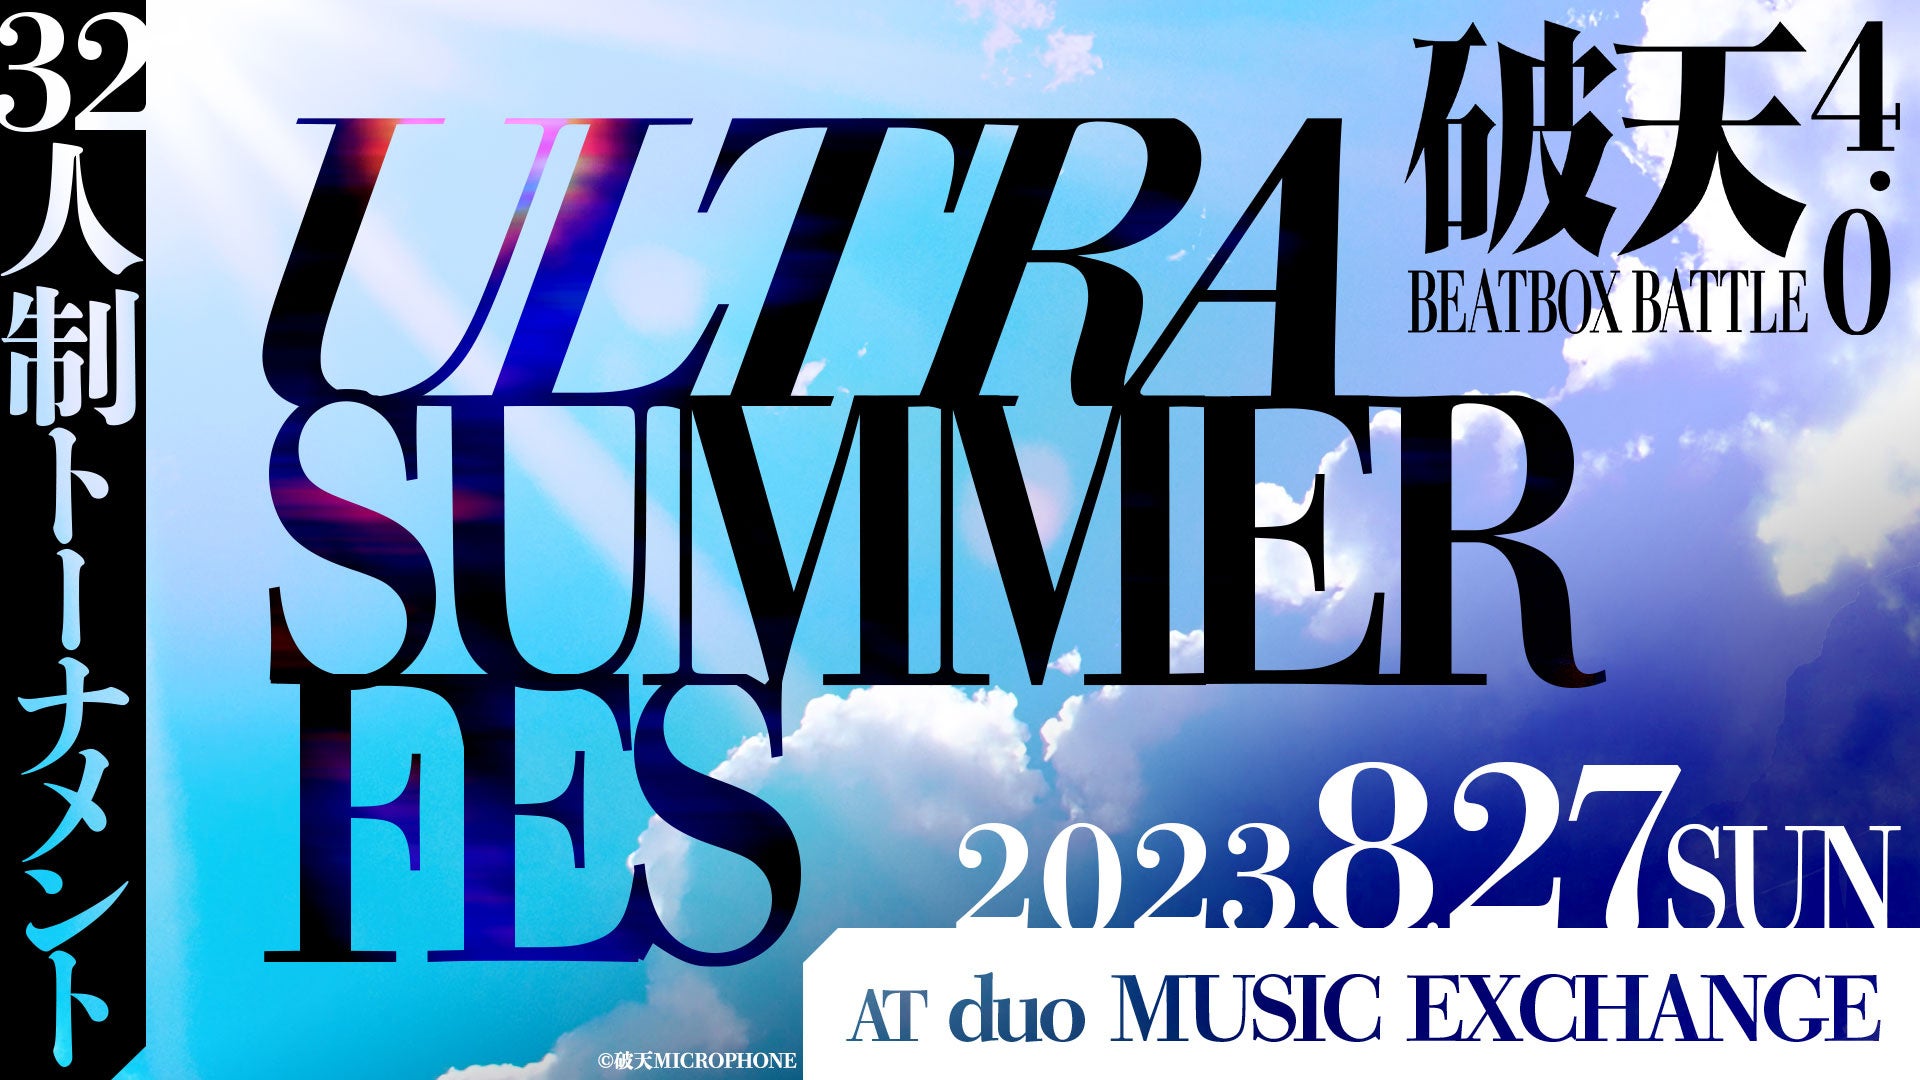 【破天BEATBOXBATTLE 4.0 ULTRA SUMMER FES】8月27日（日）duo MUSIC EXCHANGEにて開催！32人制トーナメントにFuga参戦決定！のサブ画像1